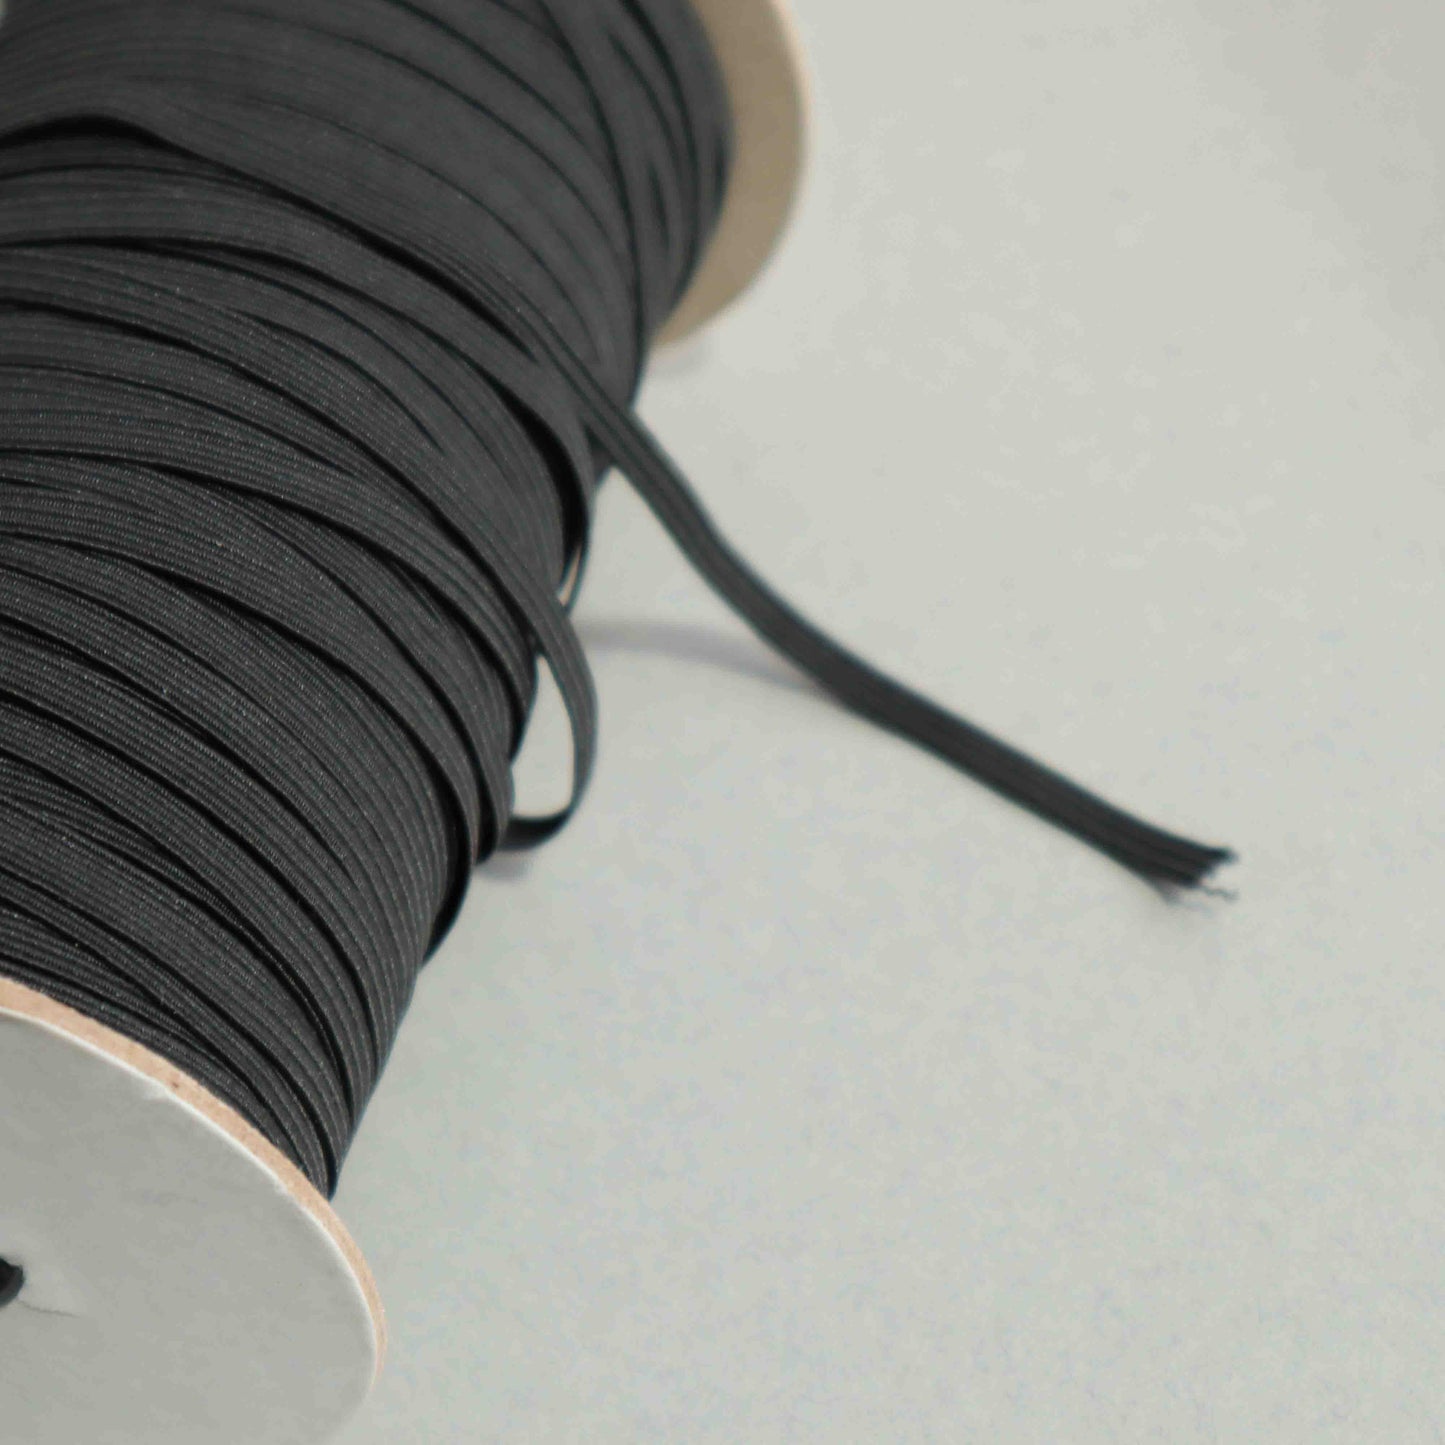 5mm Braided Flat Elastic Band - Black